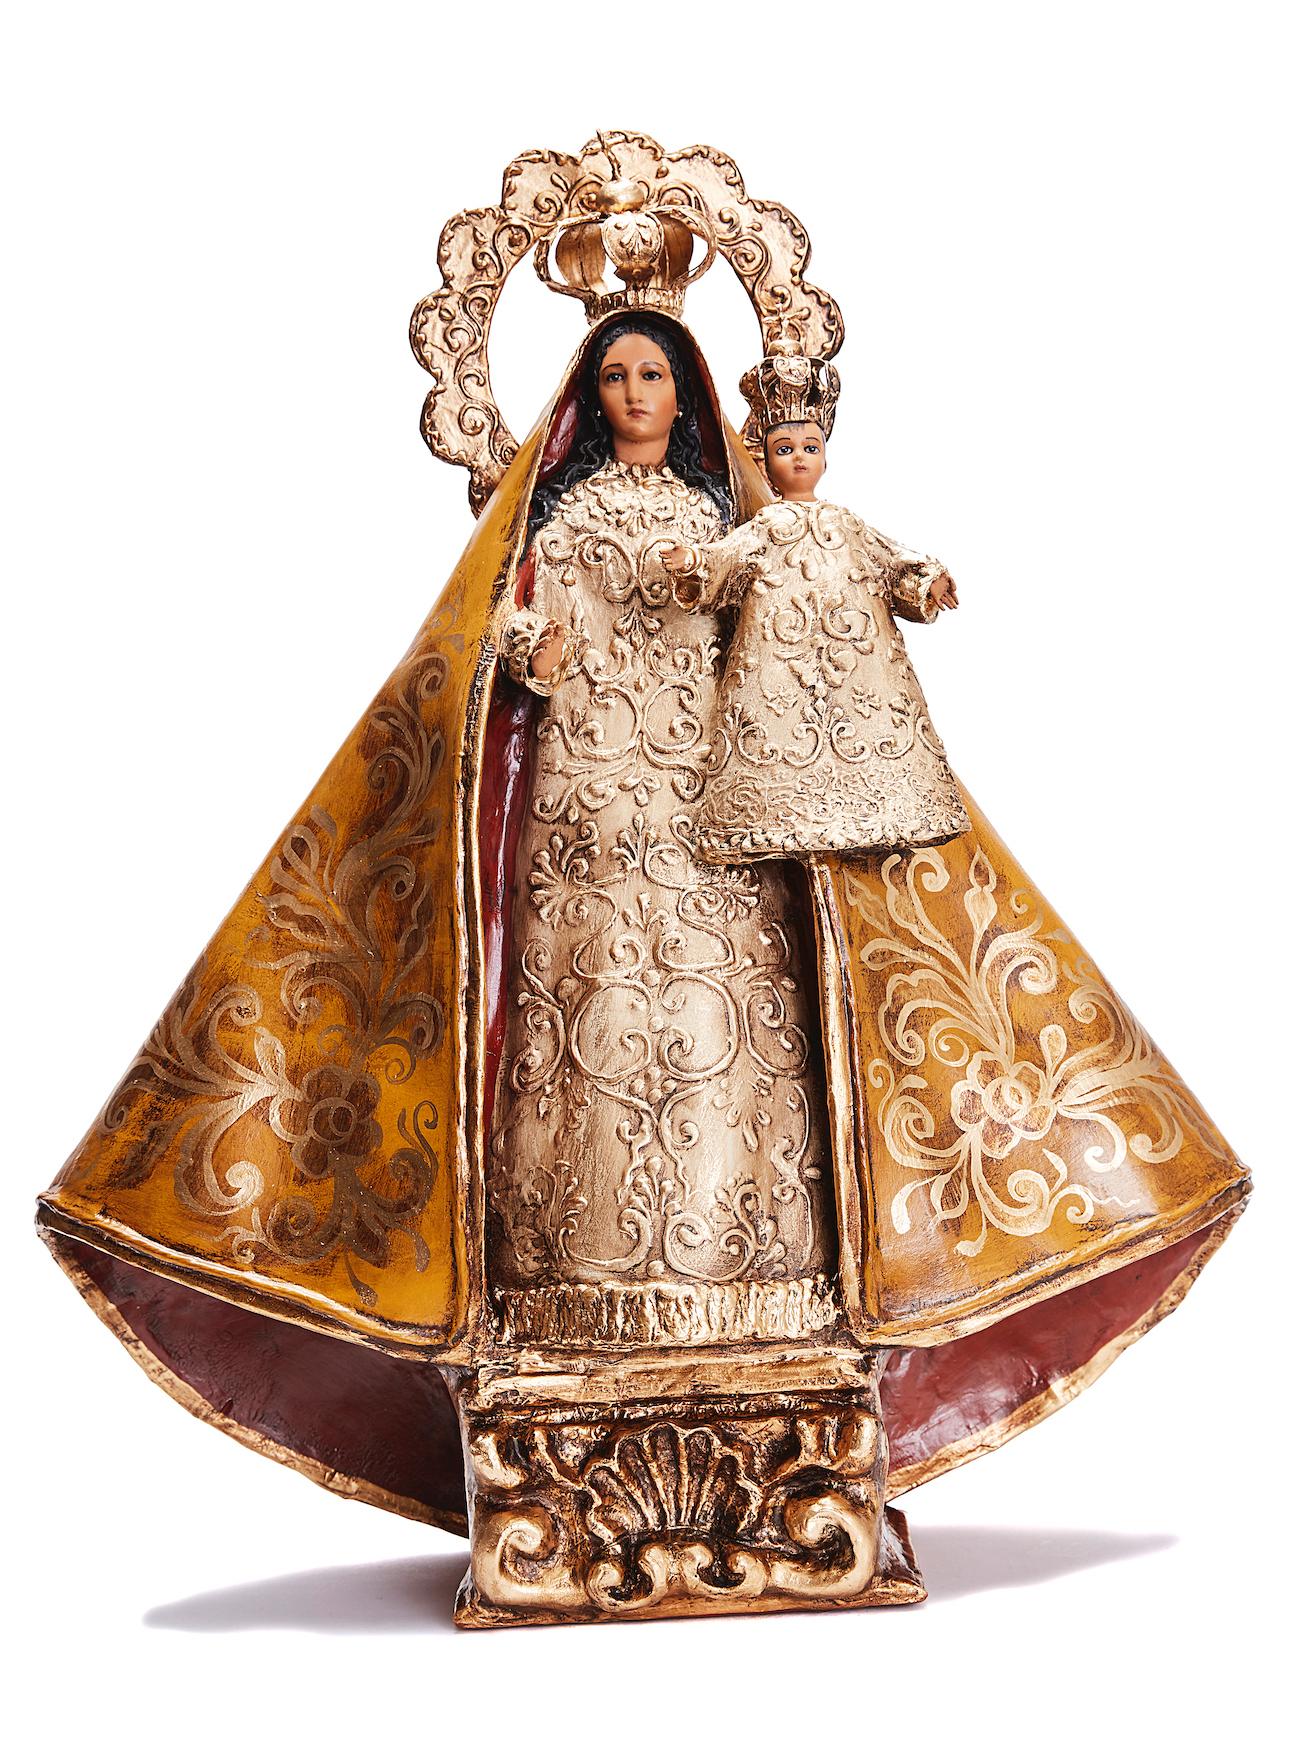 Danilo Lopez Ochoa Figurative Sculpture - Virgen de la Caridad del Cobre - Crafts - Mexican Folk Art Paper